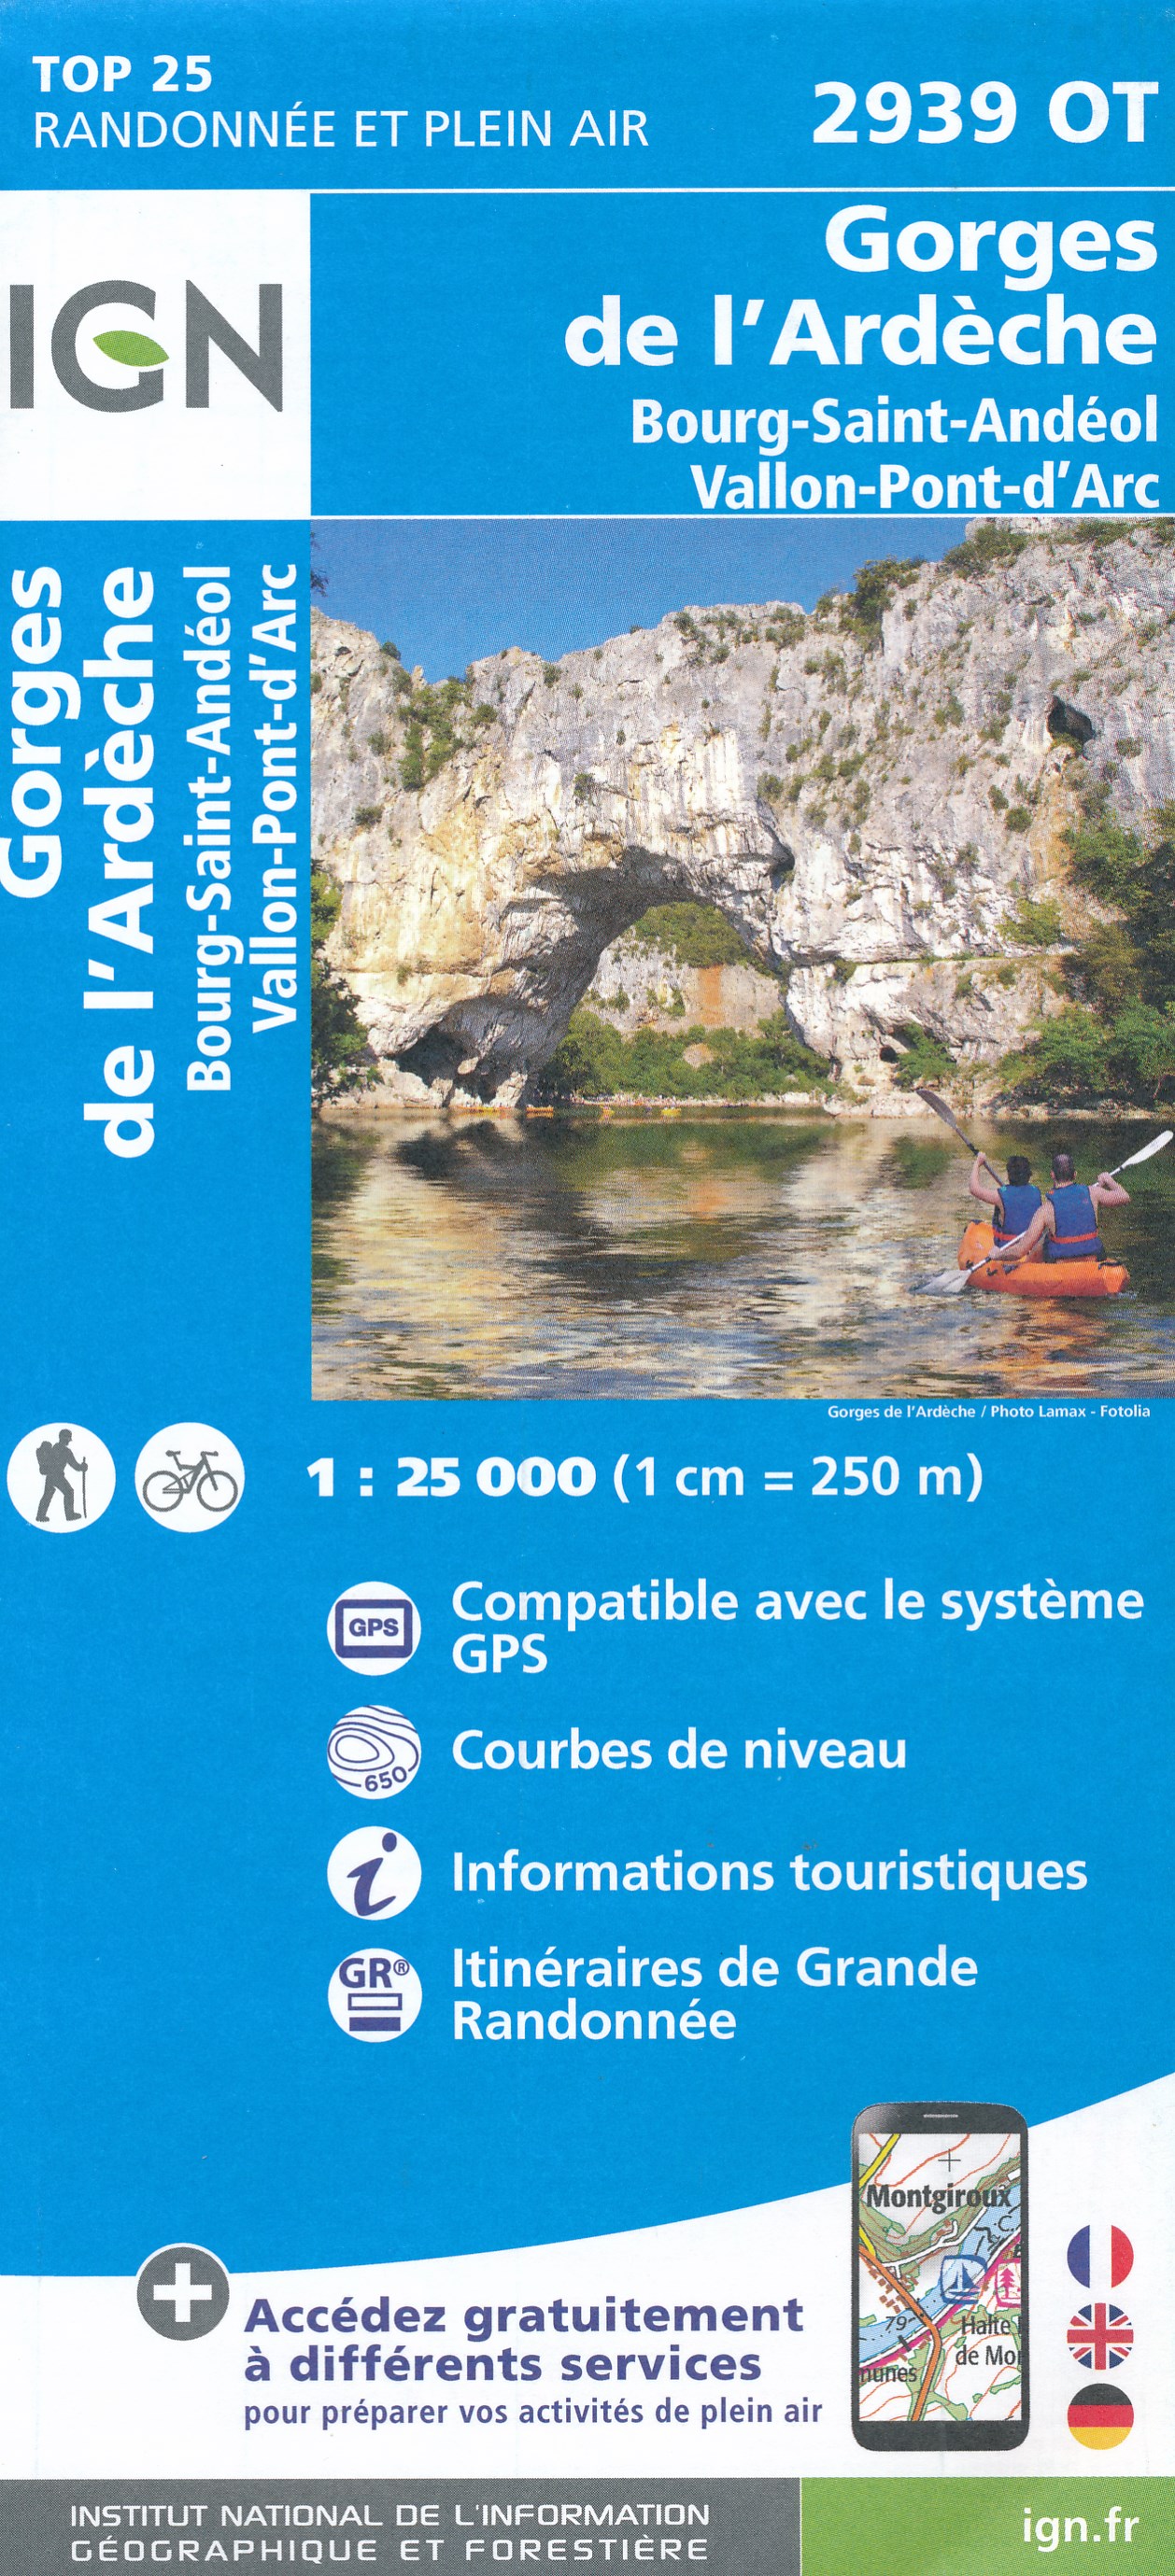 Online bestellen: Wandelkaart - Topografische kaart 2939OT Gorges de l'Ardèche | IGN - Institut Géographique National